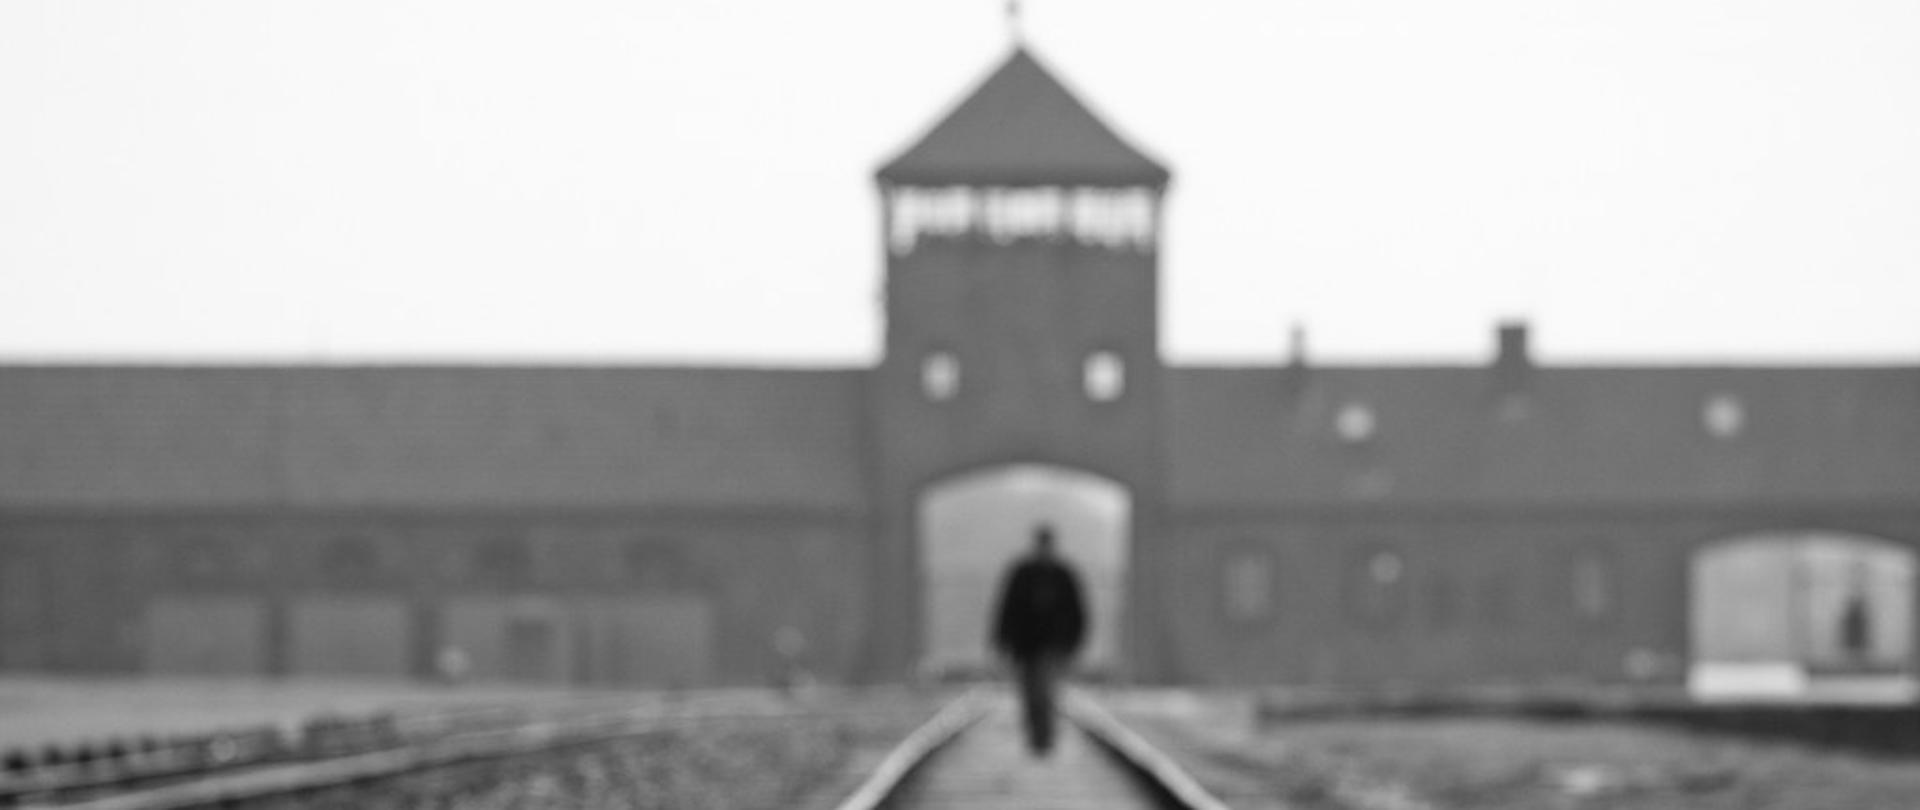 Ancien camp allemand nazi de concentration et d’extermination d’Auschwitz-Birkenau